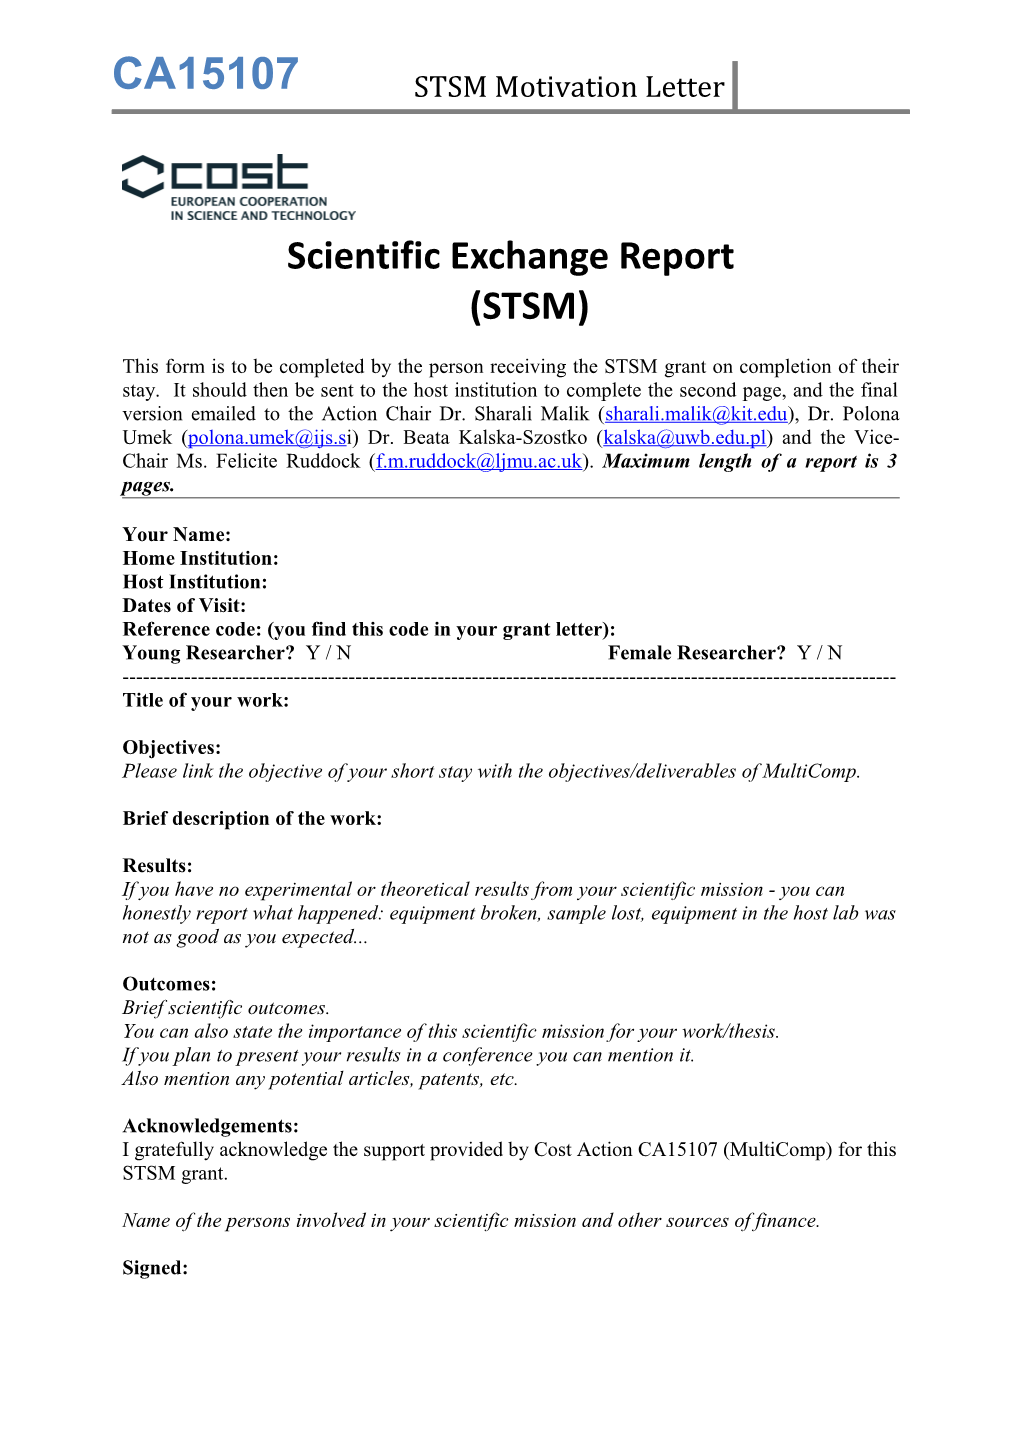 Scientific Exchange Report(STSM)